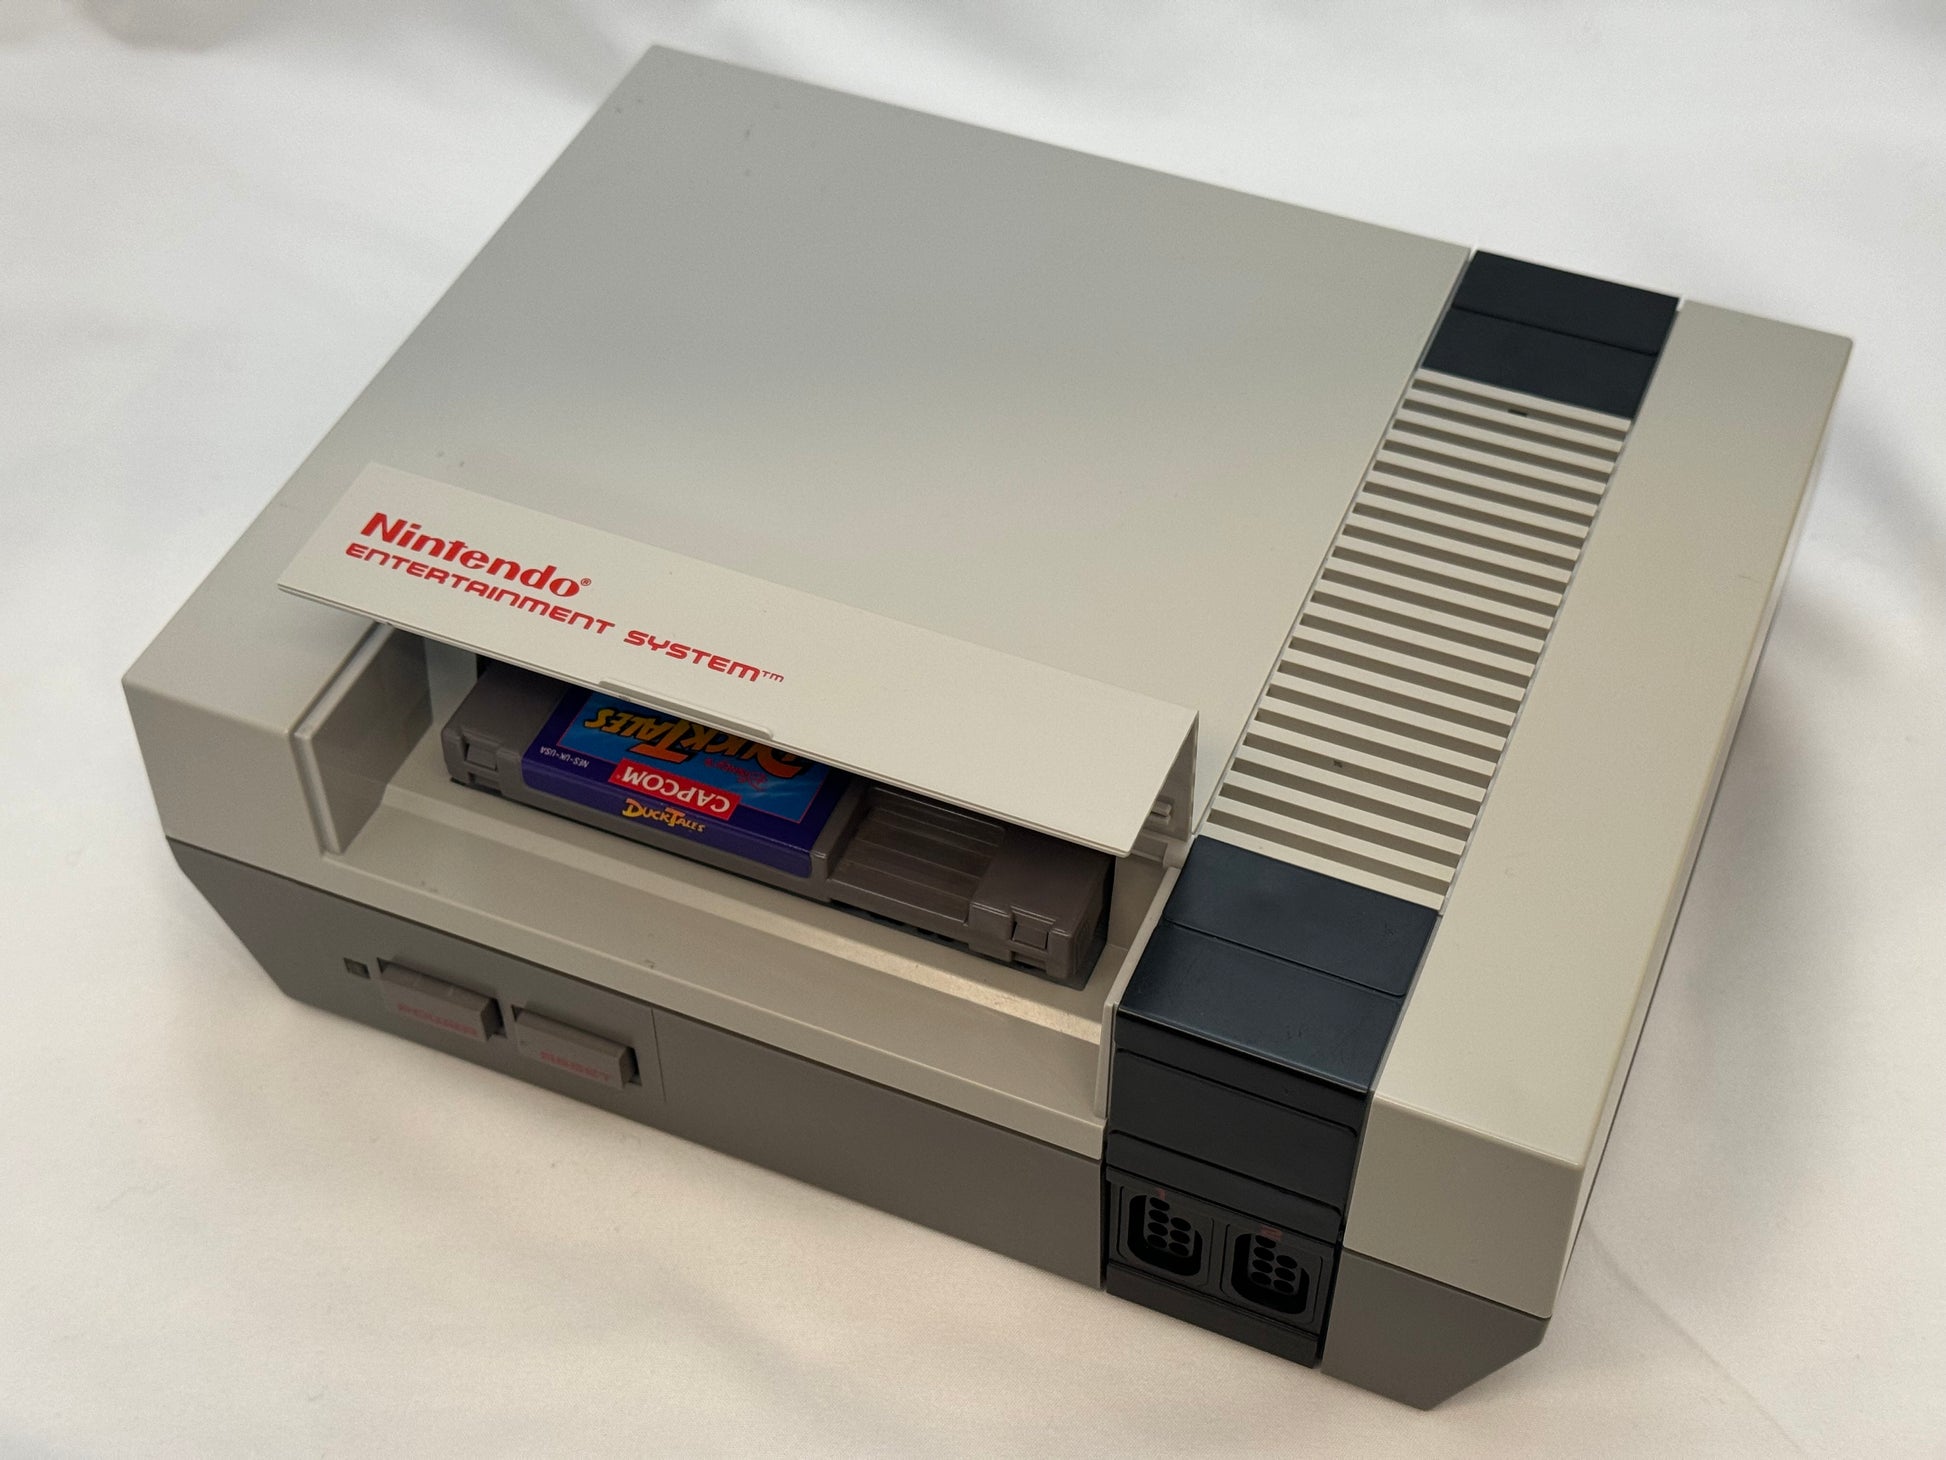 Ninten-Drawer for Nintendo NES, game inserted, Nintendrawer